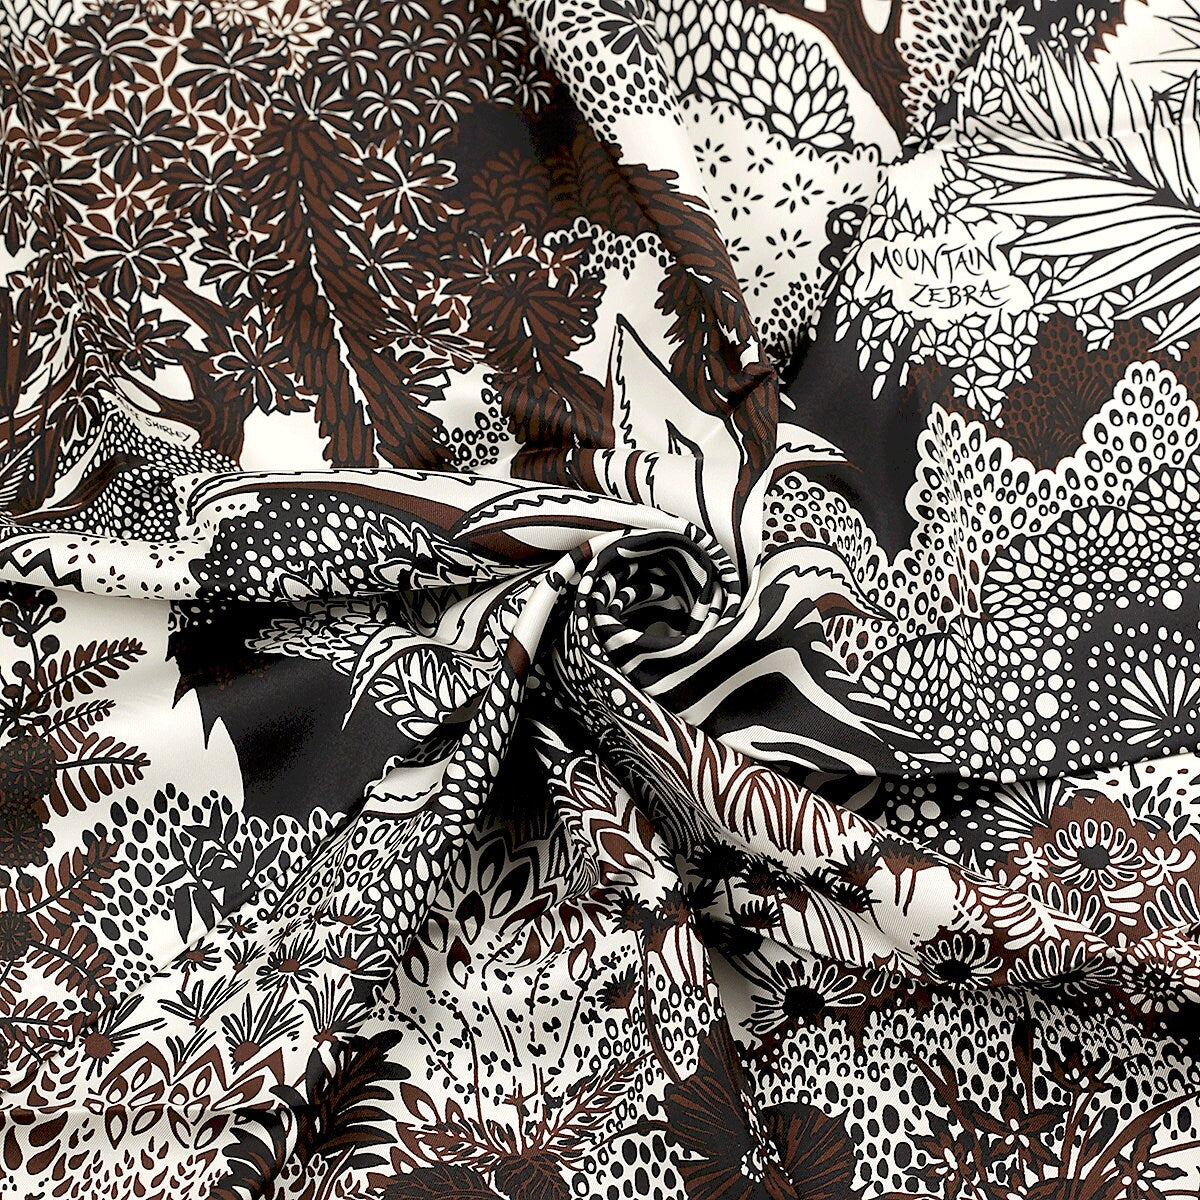 Hermes Scarf "Mountain Zebra" by Alice Shirley 90cm Silk | Carre Foulard